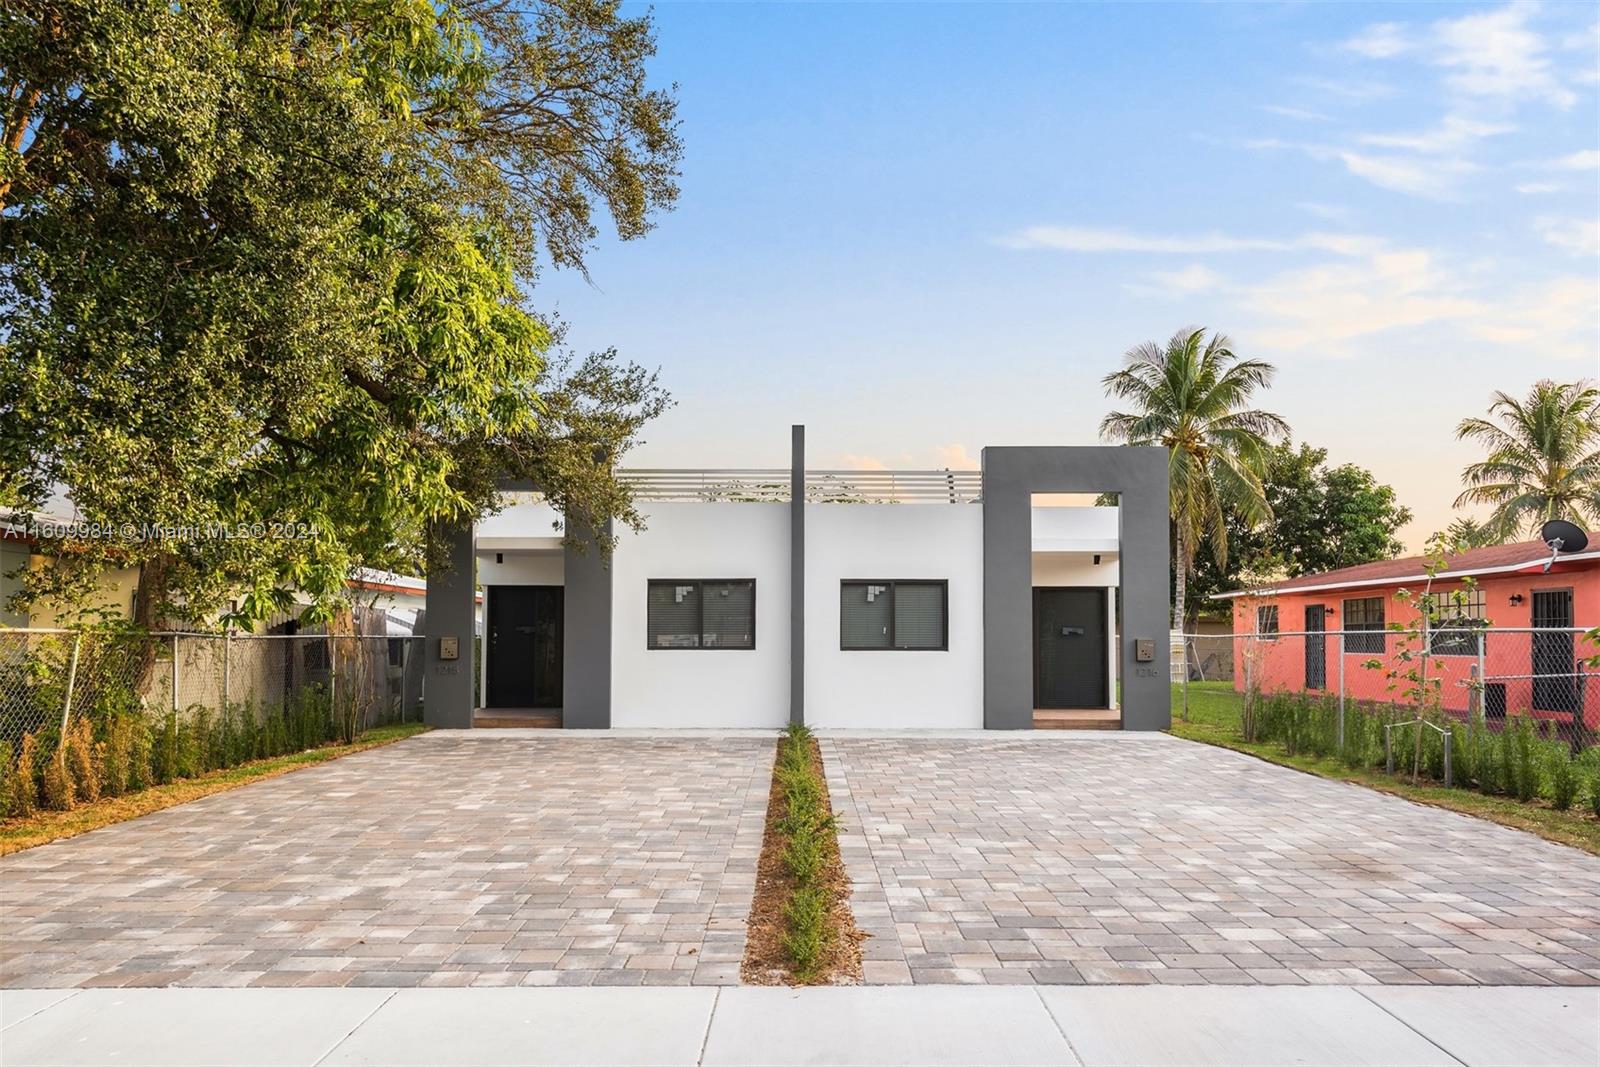 Rental Property at 68506852 Nw 4th Ave, Miami, Broward County, Florida -  - $2,000,000 MO.